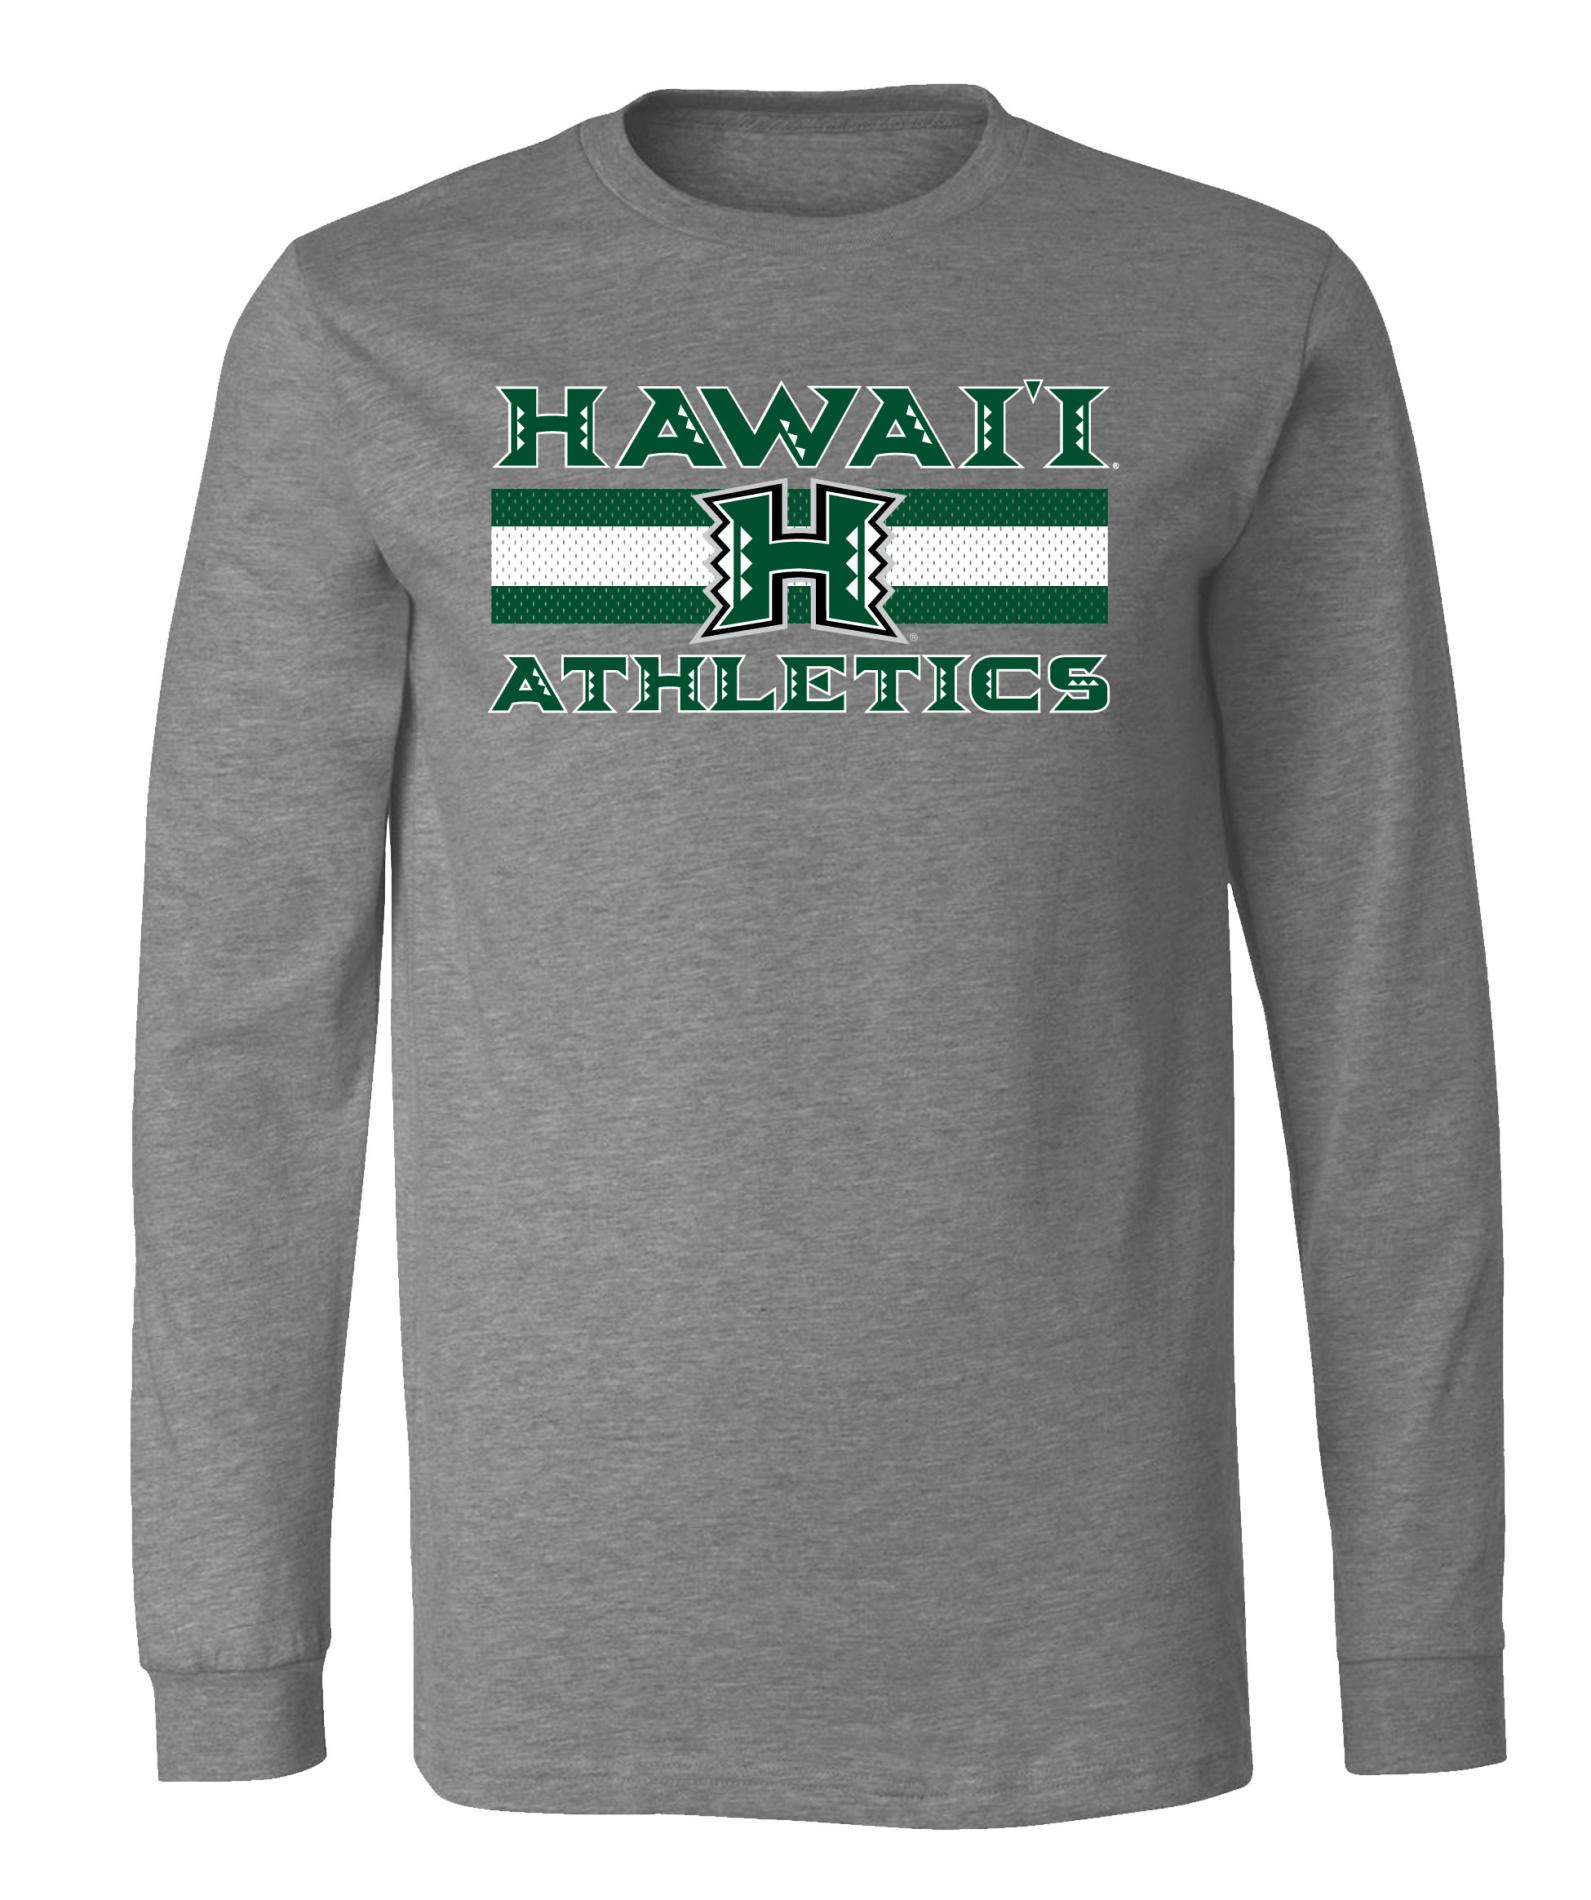 NCAA Boys' Long-Sleeve T-Shirt - Hawaii Rainbow Warriors